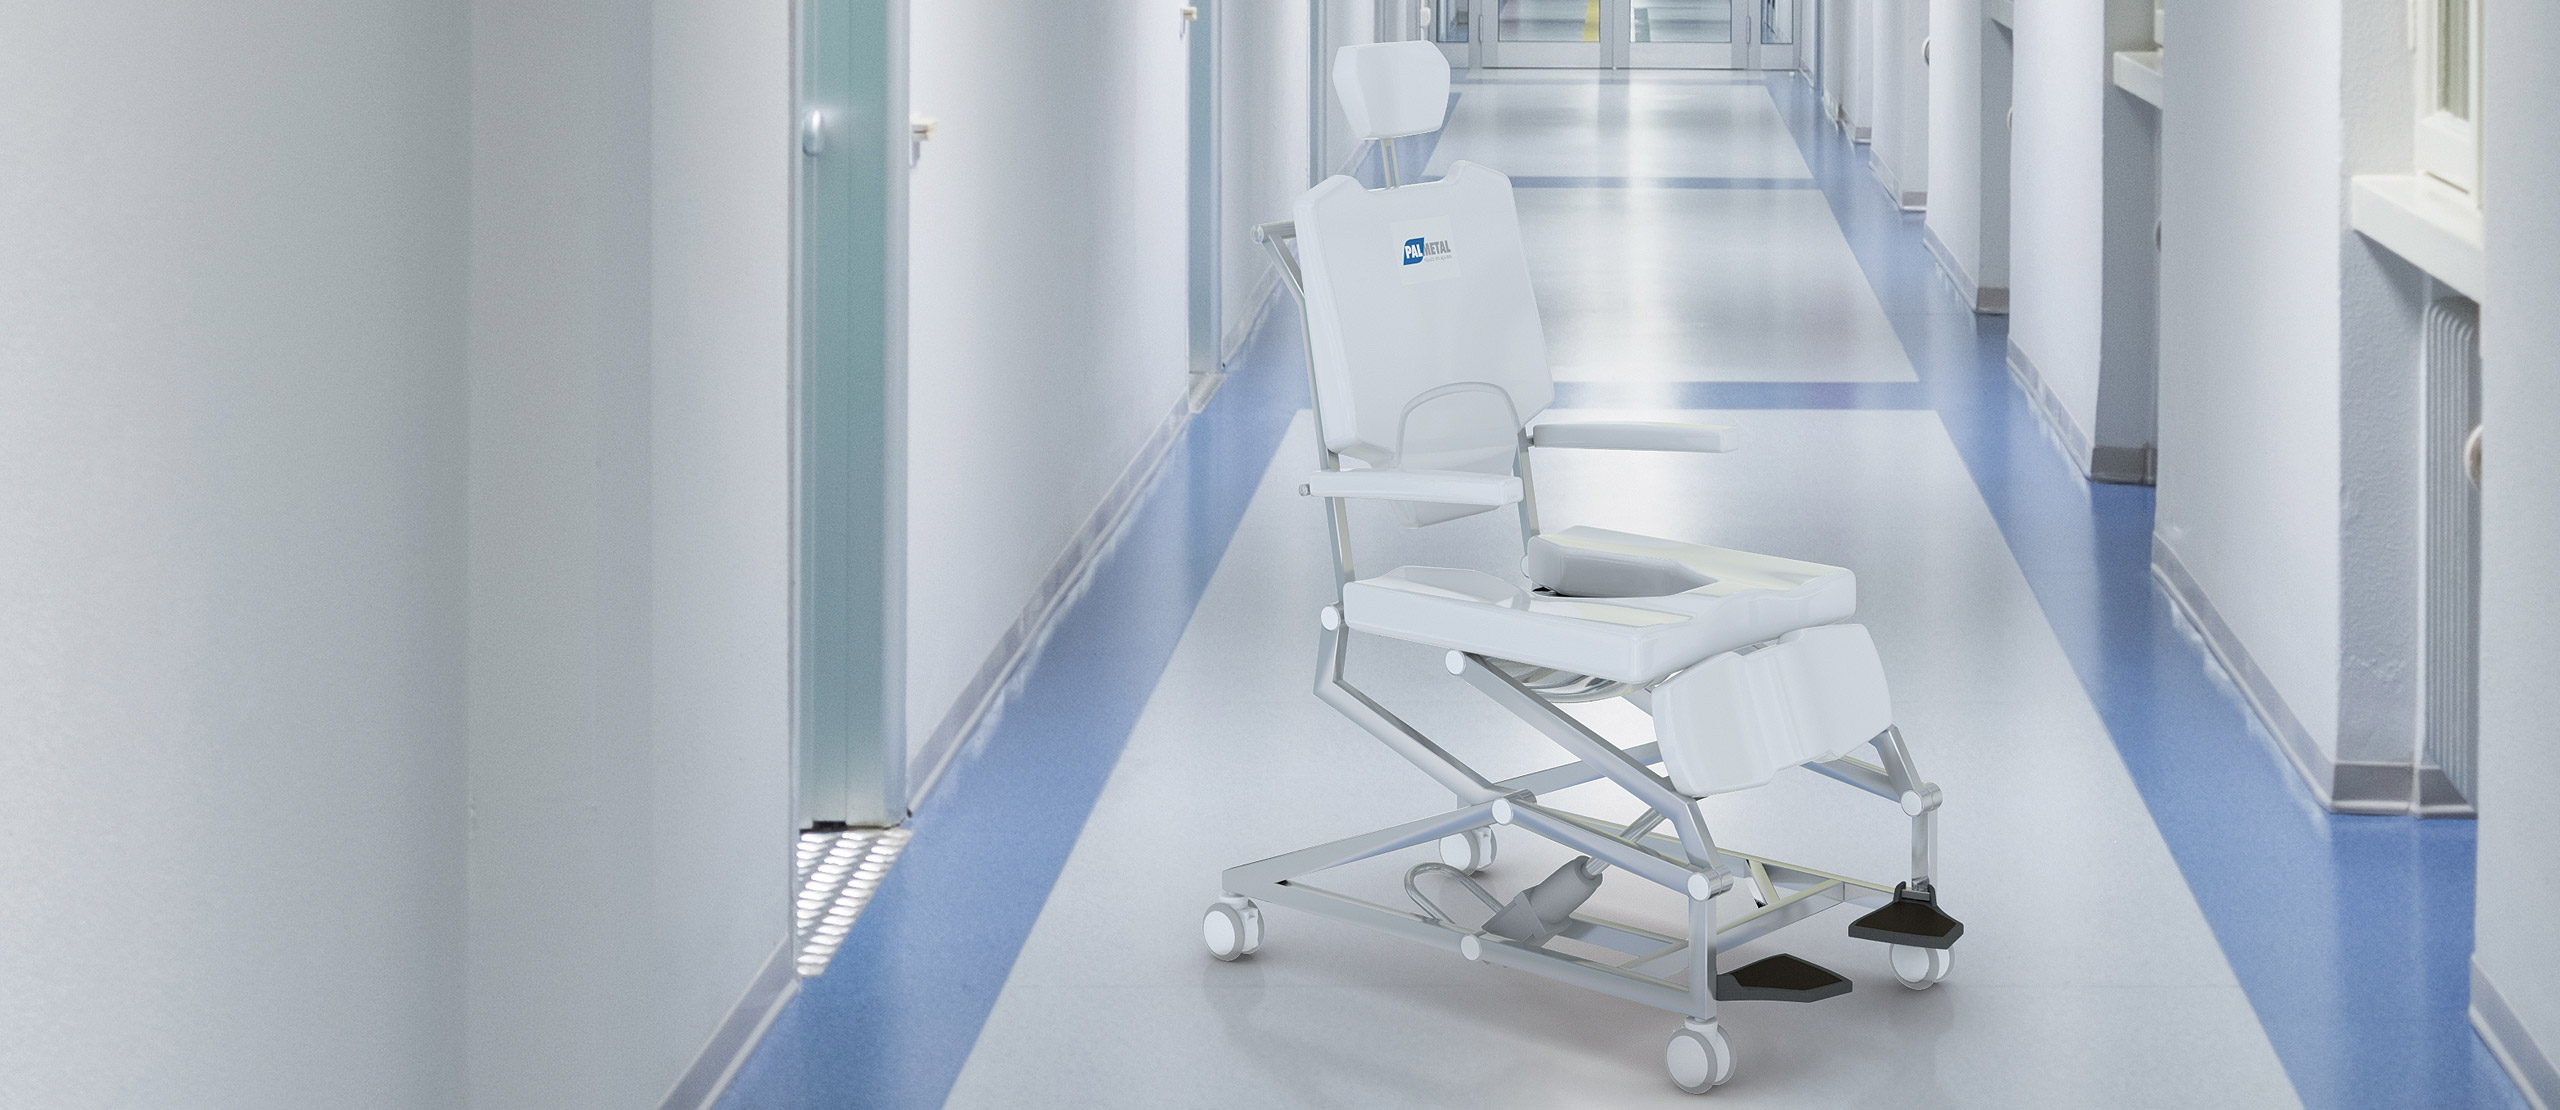 cadeira de banho no corredor do hospital